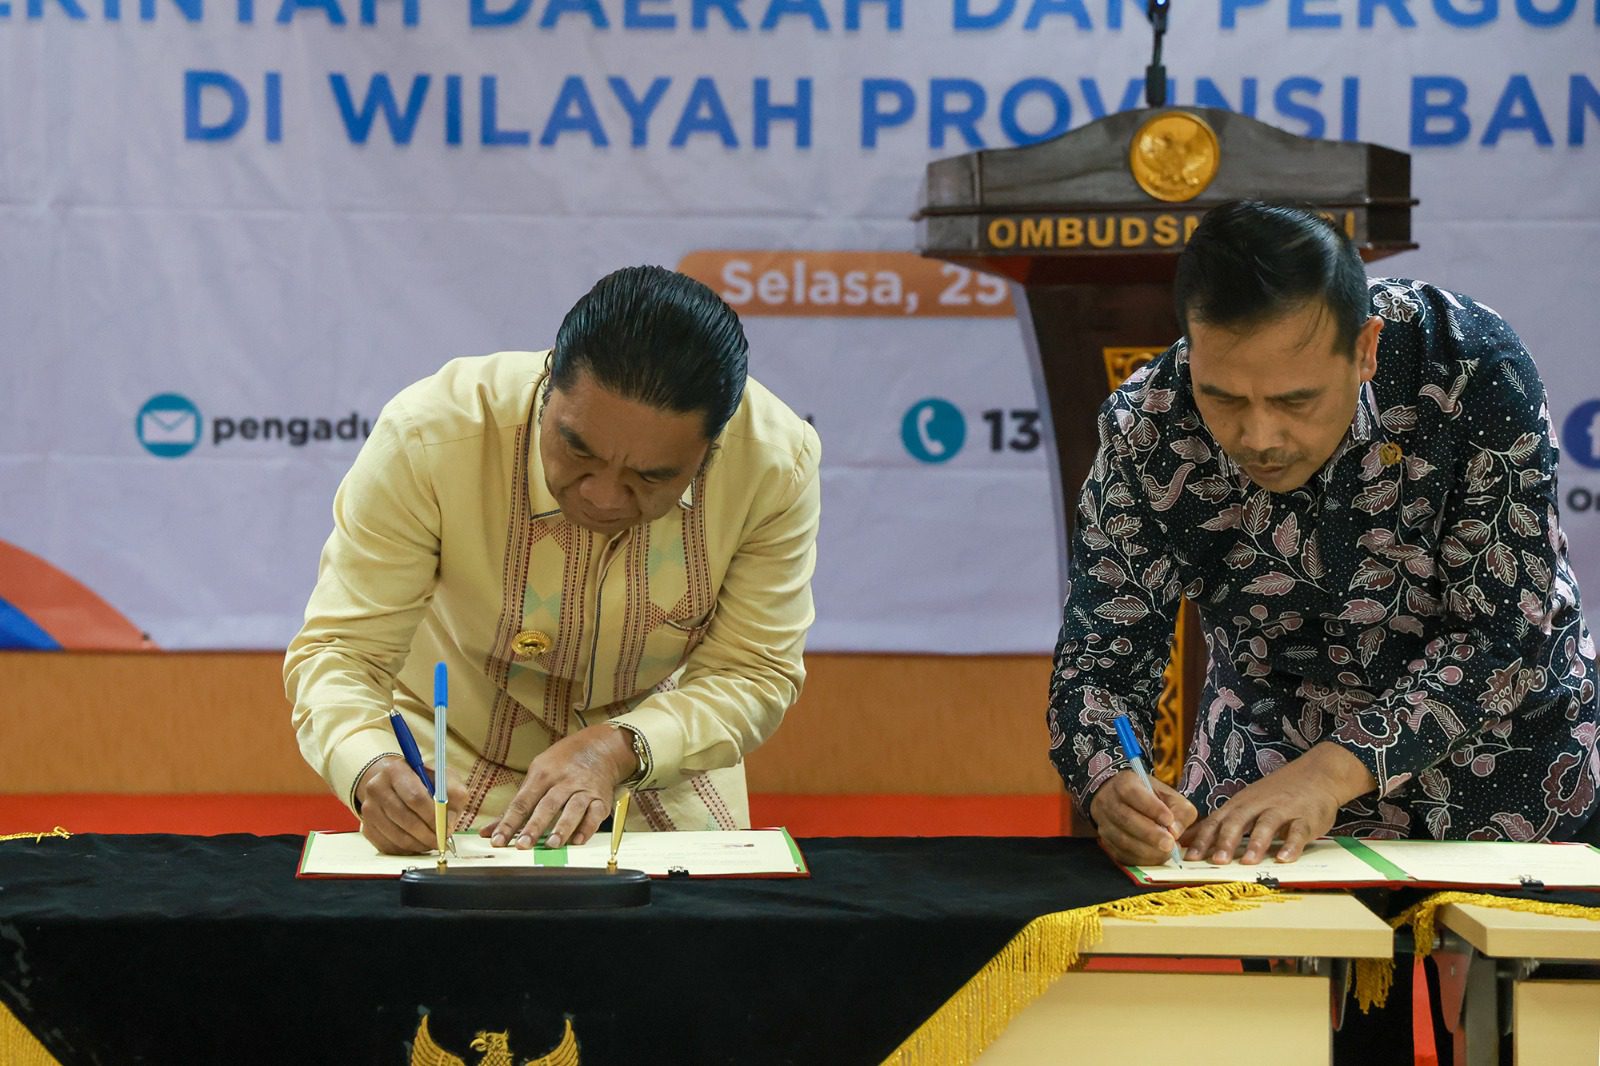 Pj Gubernur Provinsi Banten Al Muktabar Tandatangani MoU Dengan Ombudsman RI Ciptakan Pelayanan Prima